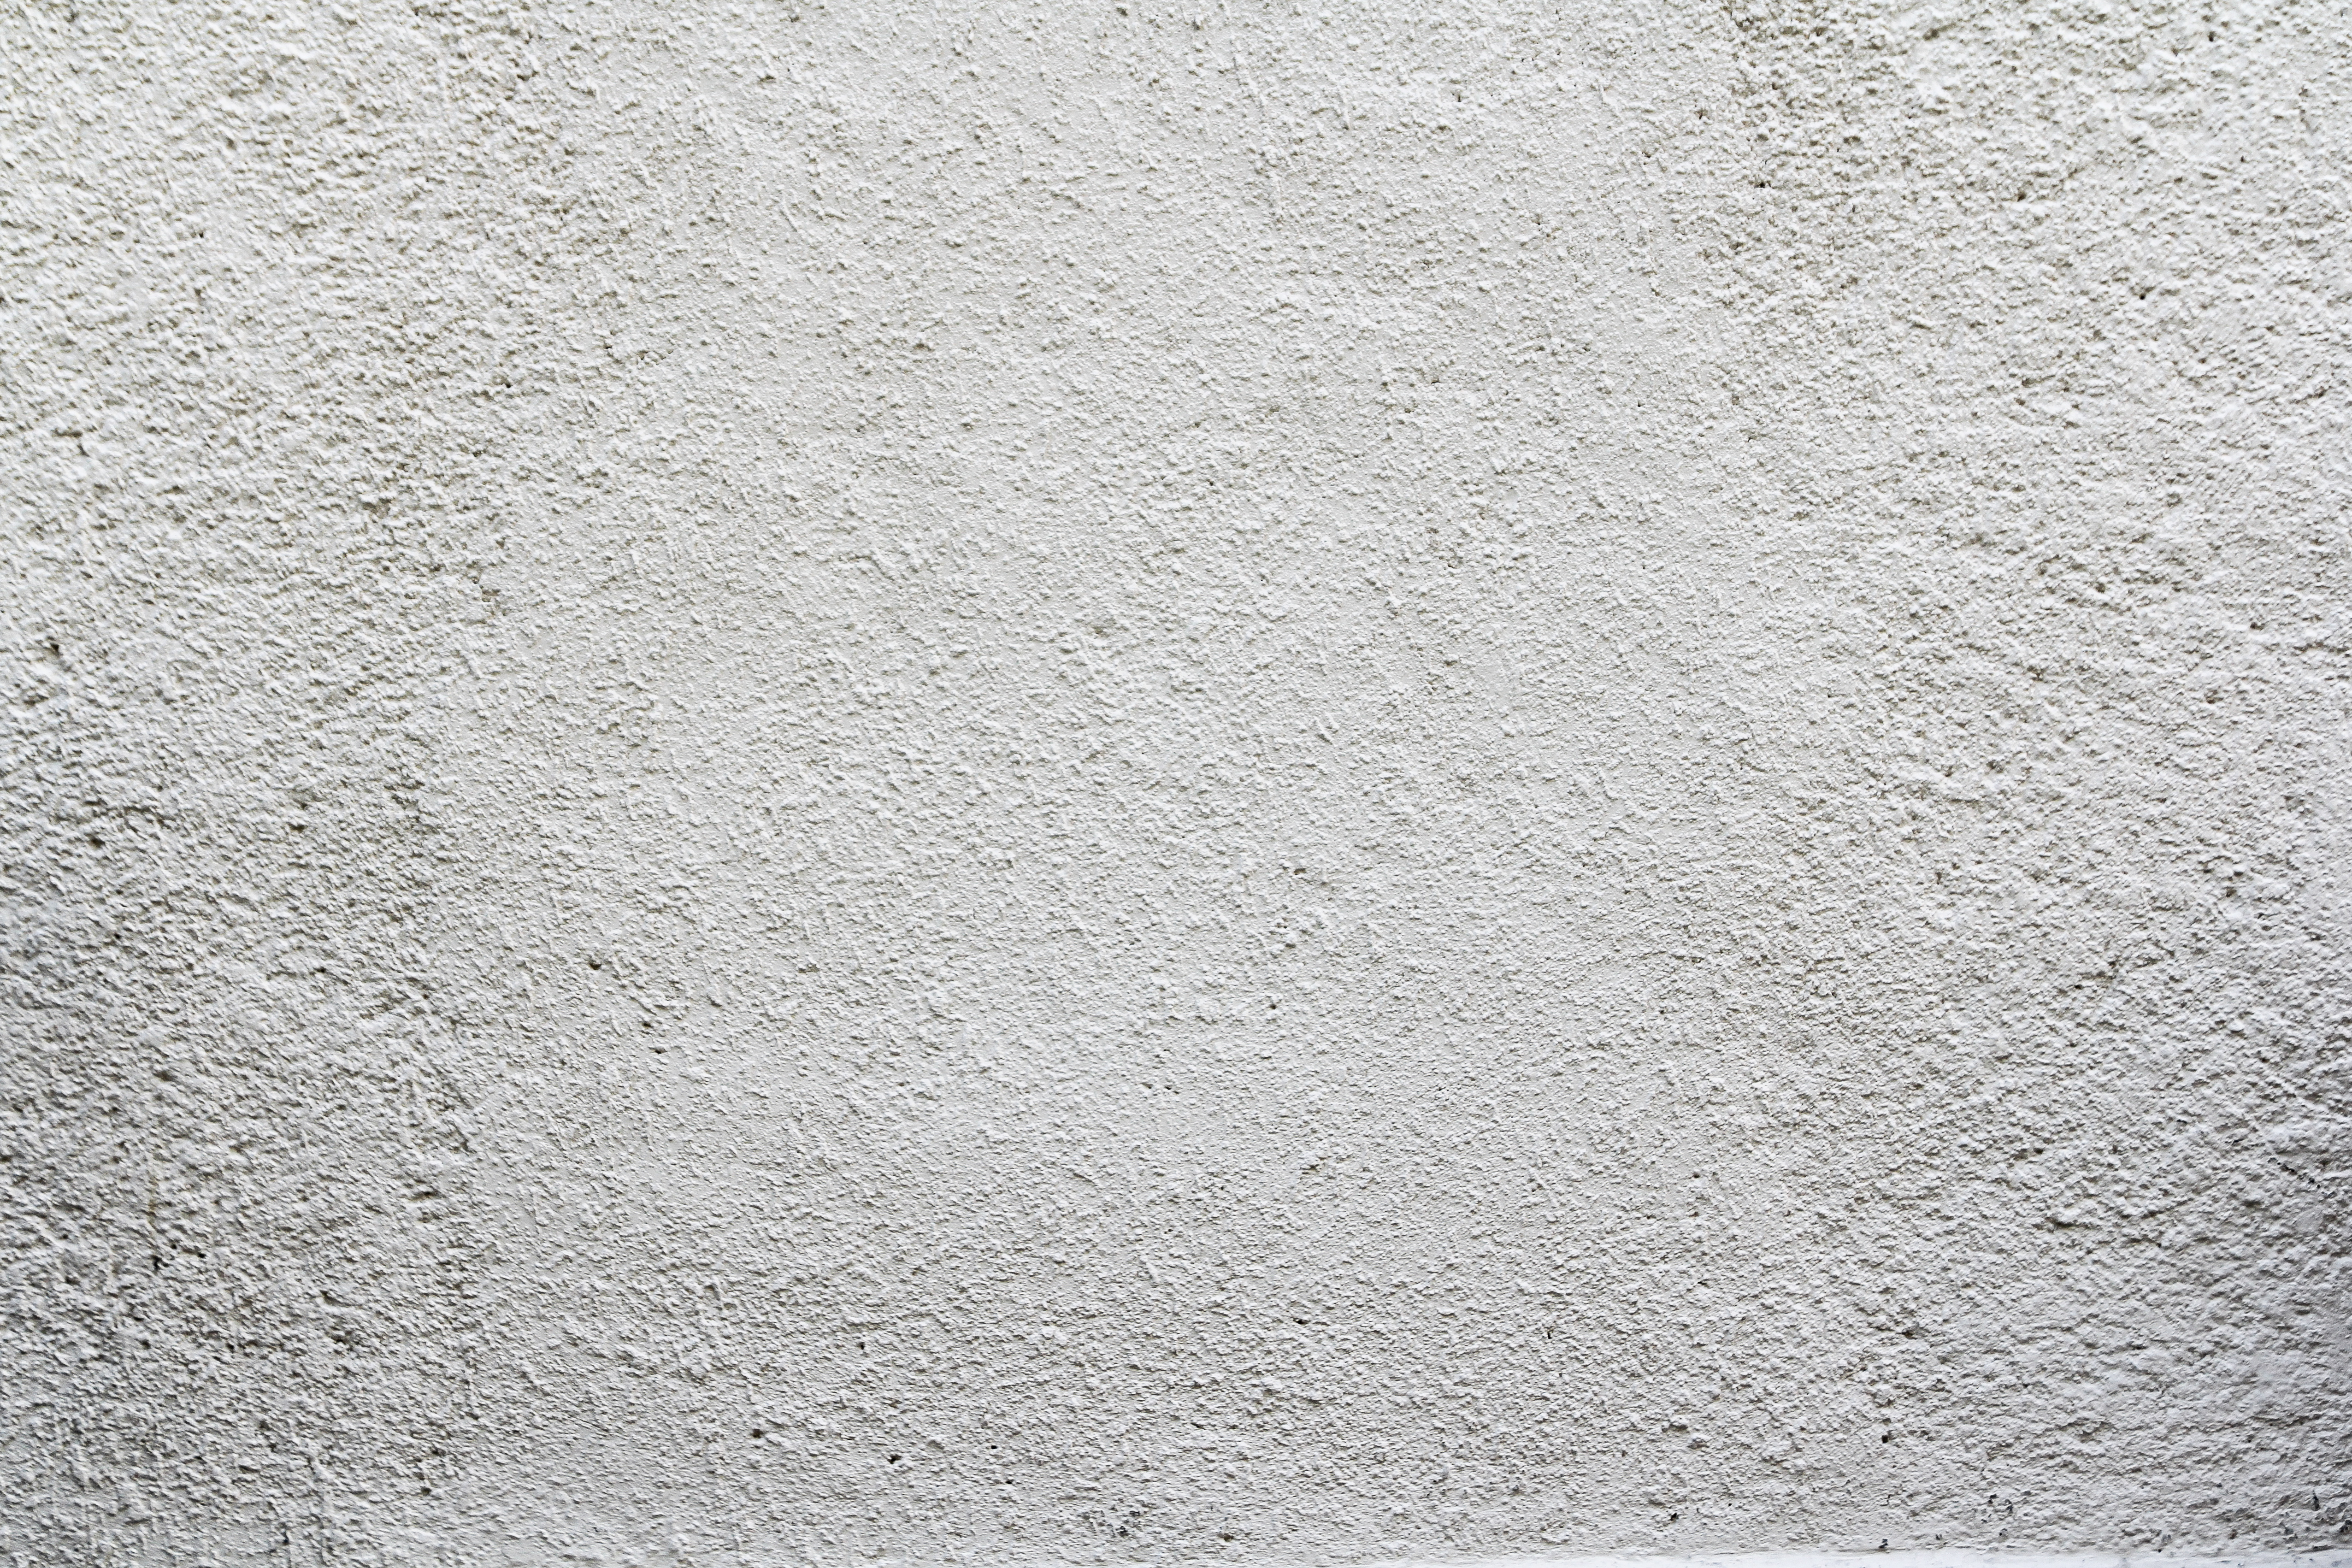 White plaster wall - Concrete - Texturify - Free textures